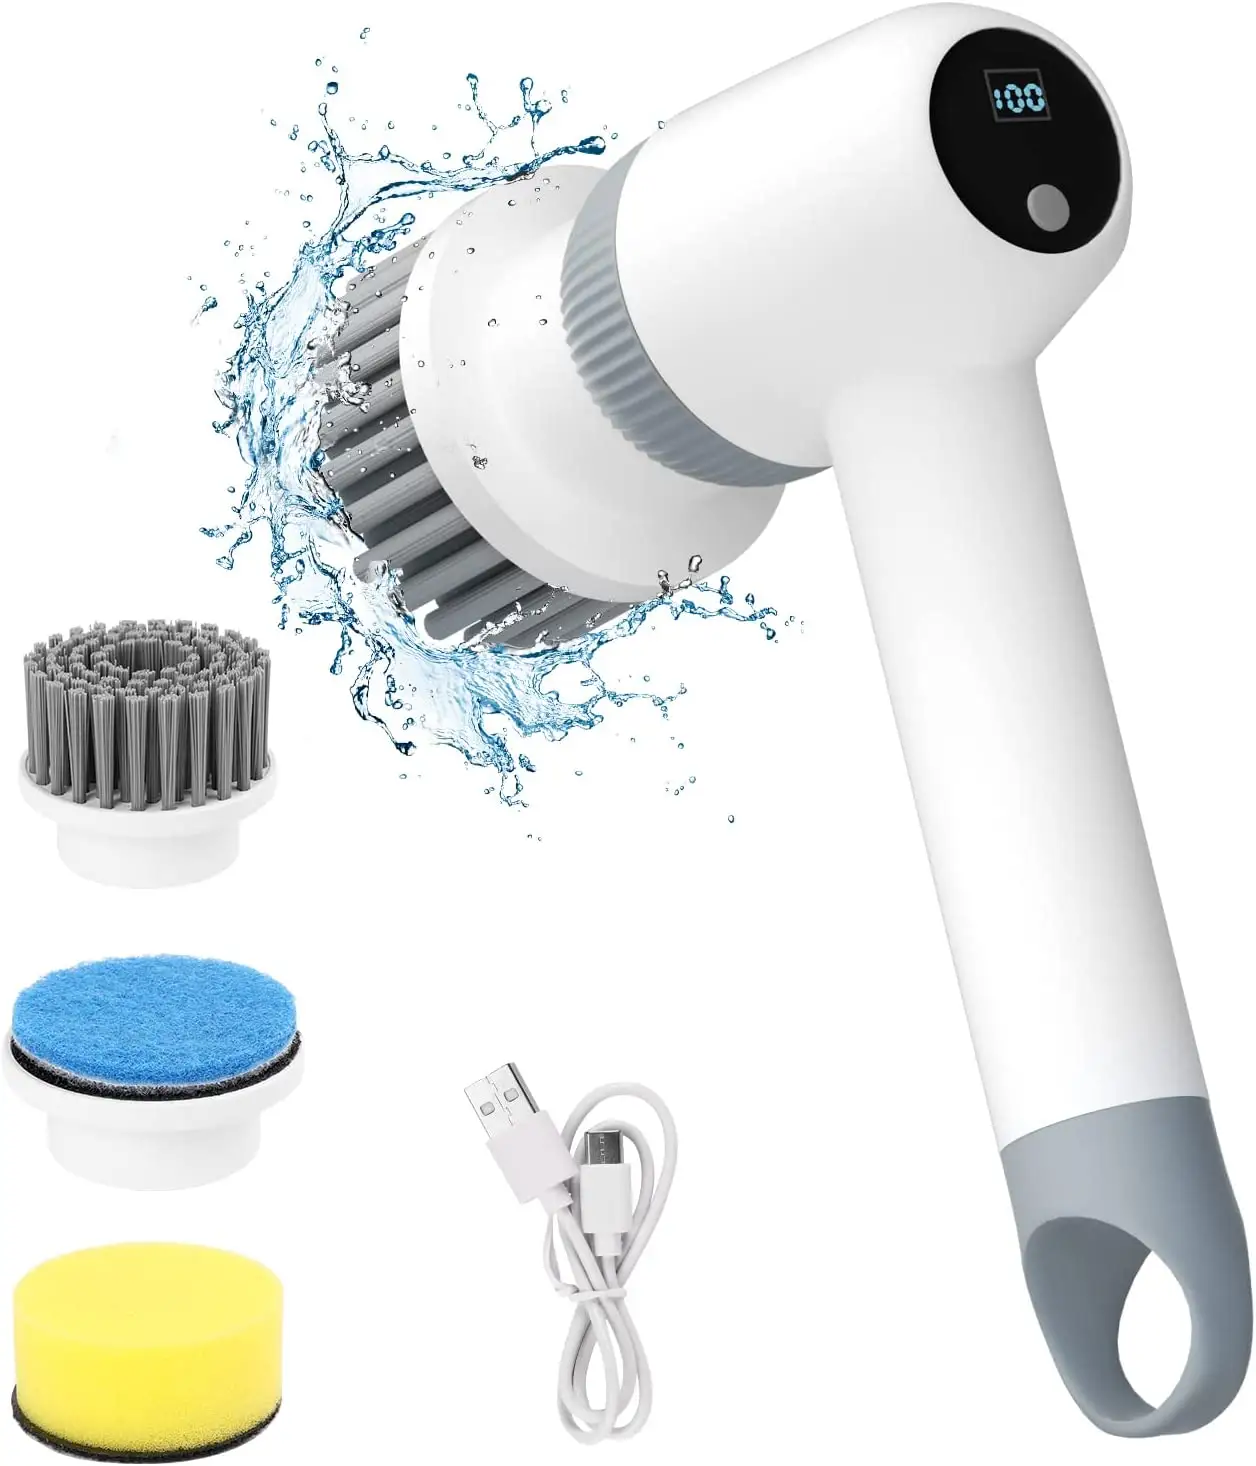 Cepillo de limpieza de baño inalámbrico eléctrico con pantalla LED y velocidades duales para limpiar bañera/azulejo/fregadero/piso/ventana